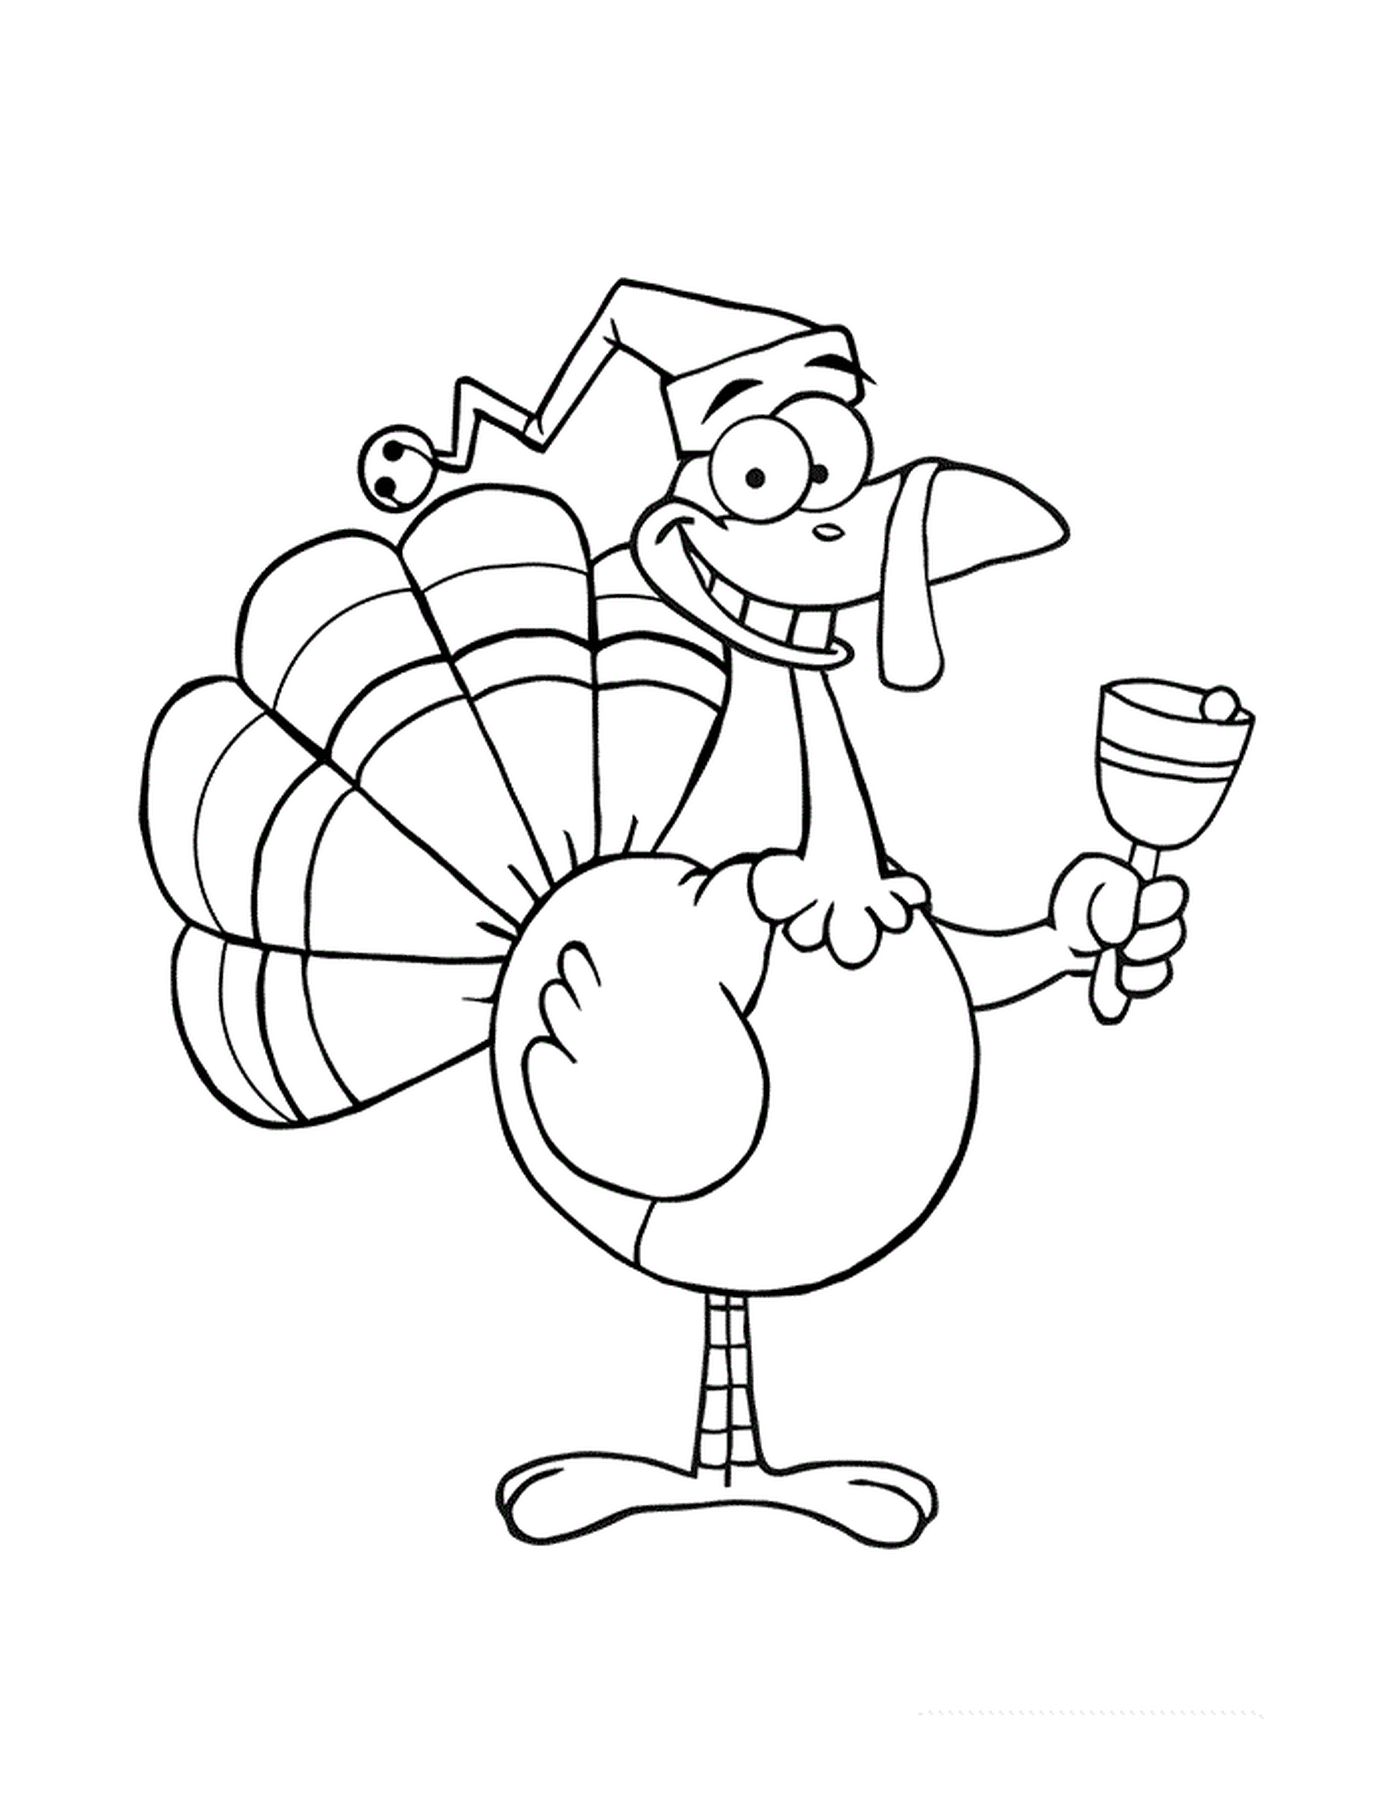   Une dinde de dessin animé portant un chapeau de bouffon et tenant un verre à vin 